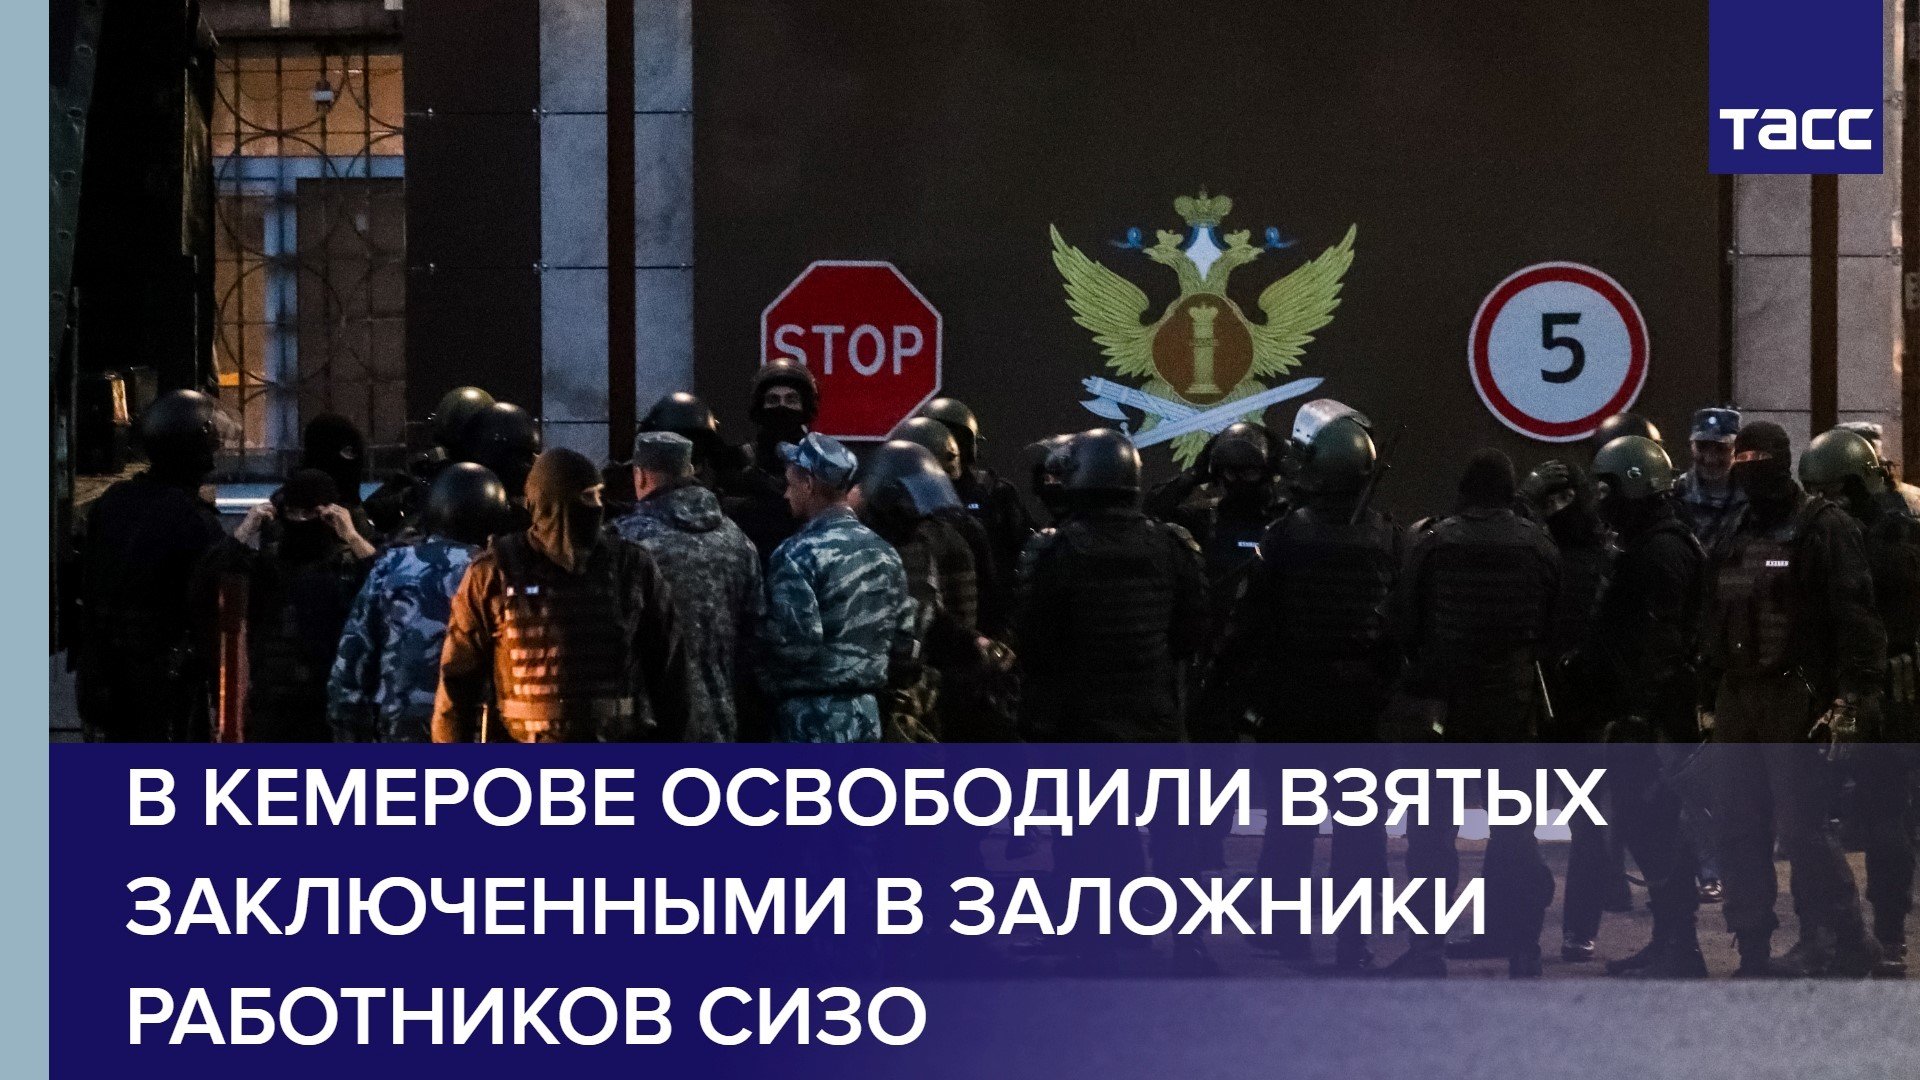 В Кемерове освободили взятых заключенными в заложники работников СИЗО #shorts